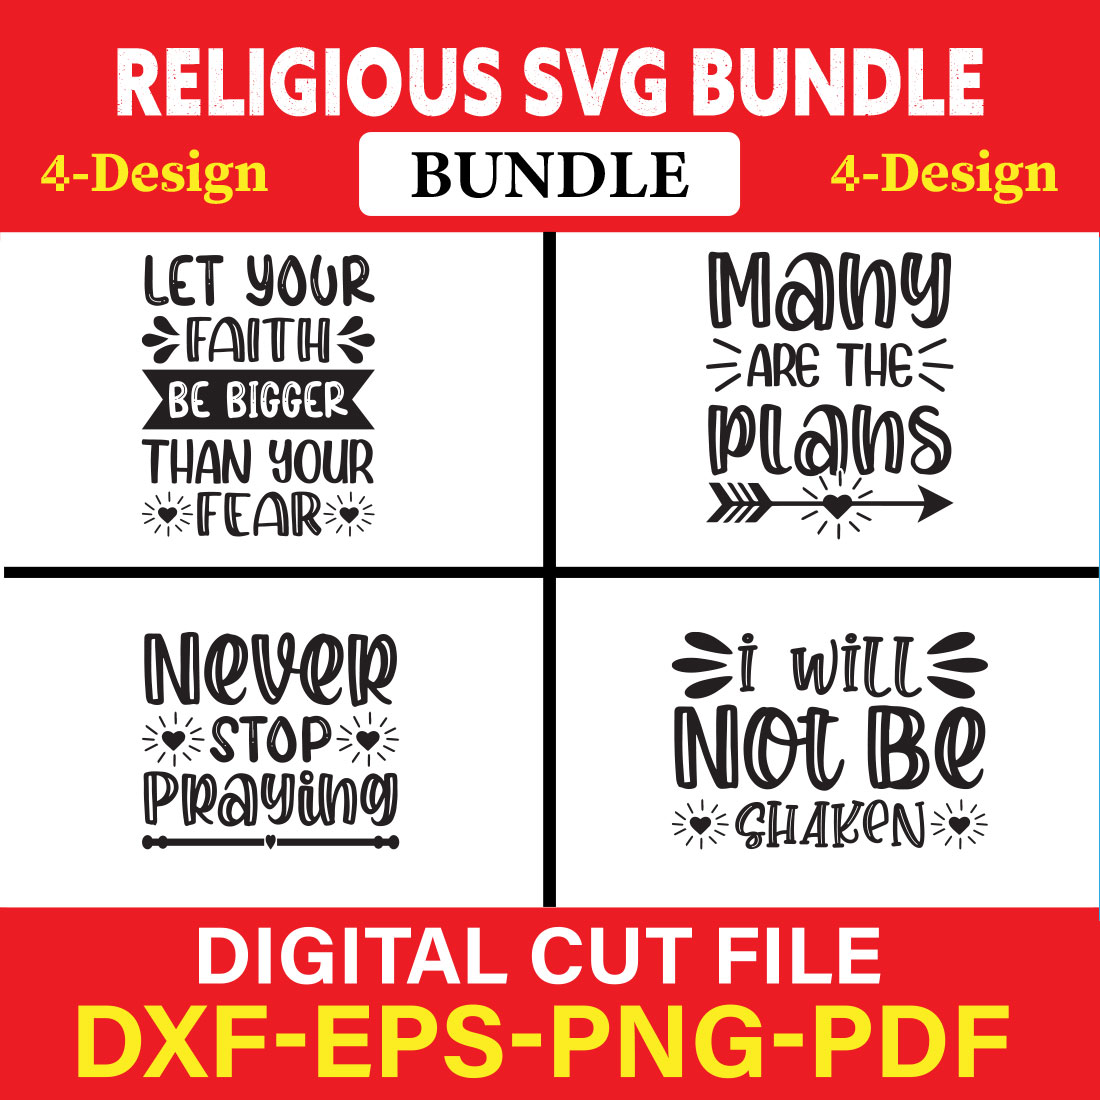 Religious T-shirt Design Bundle Vol-4 cover image.